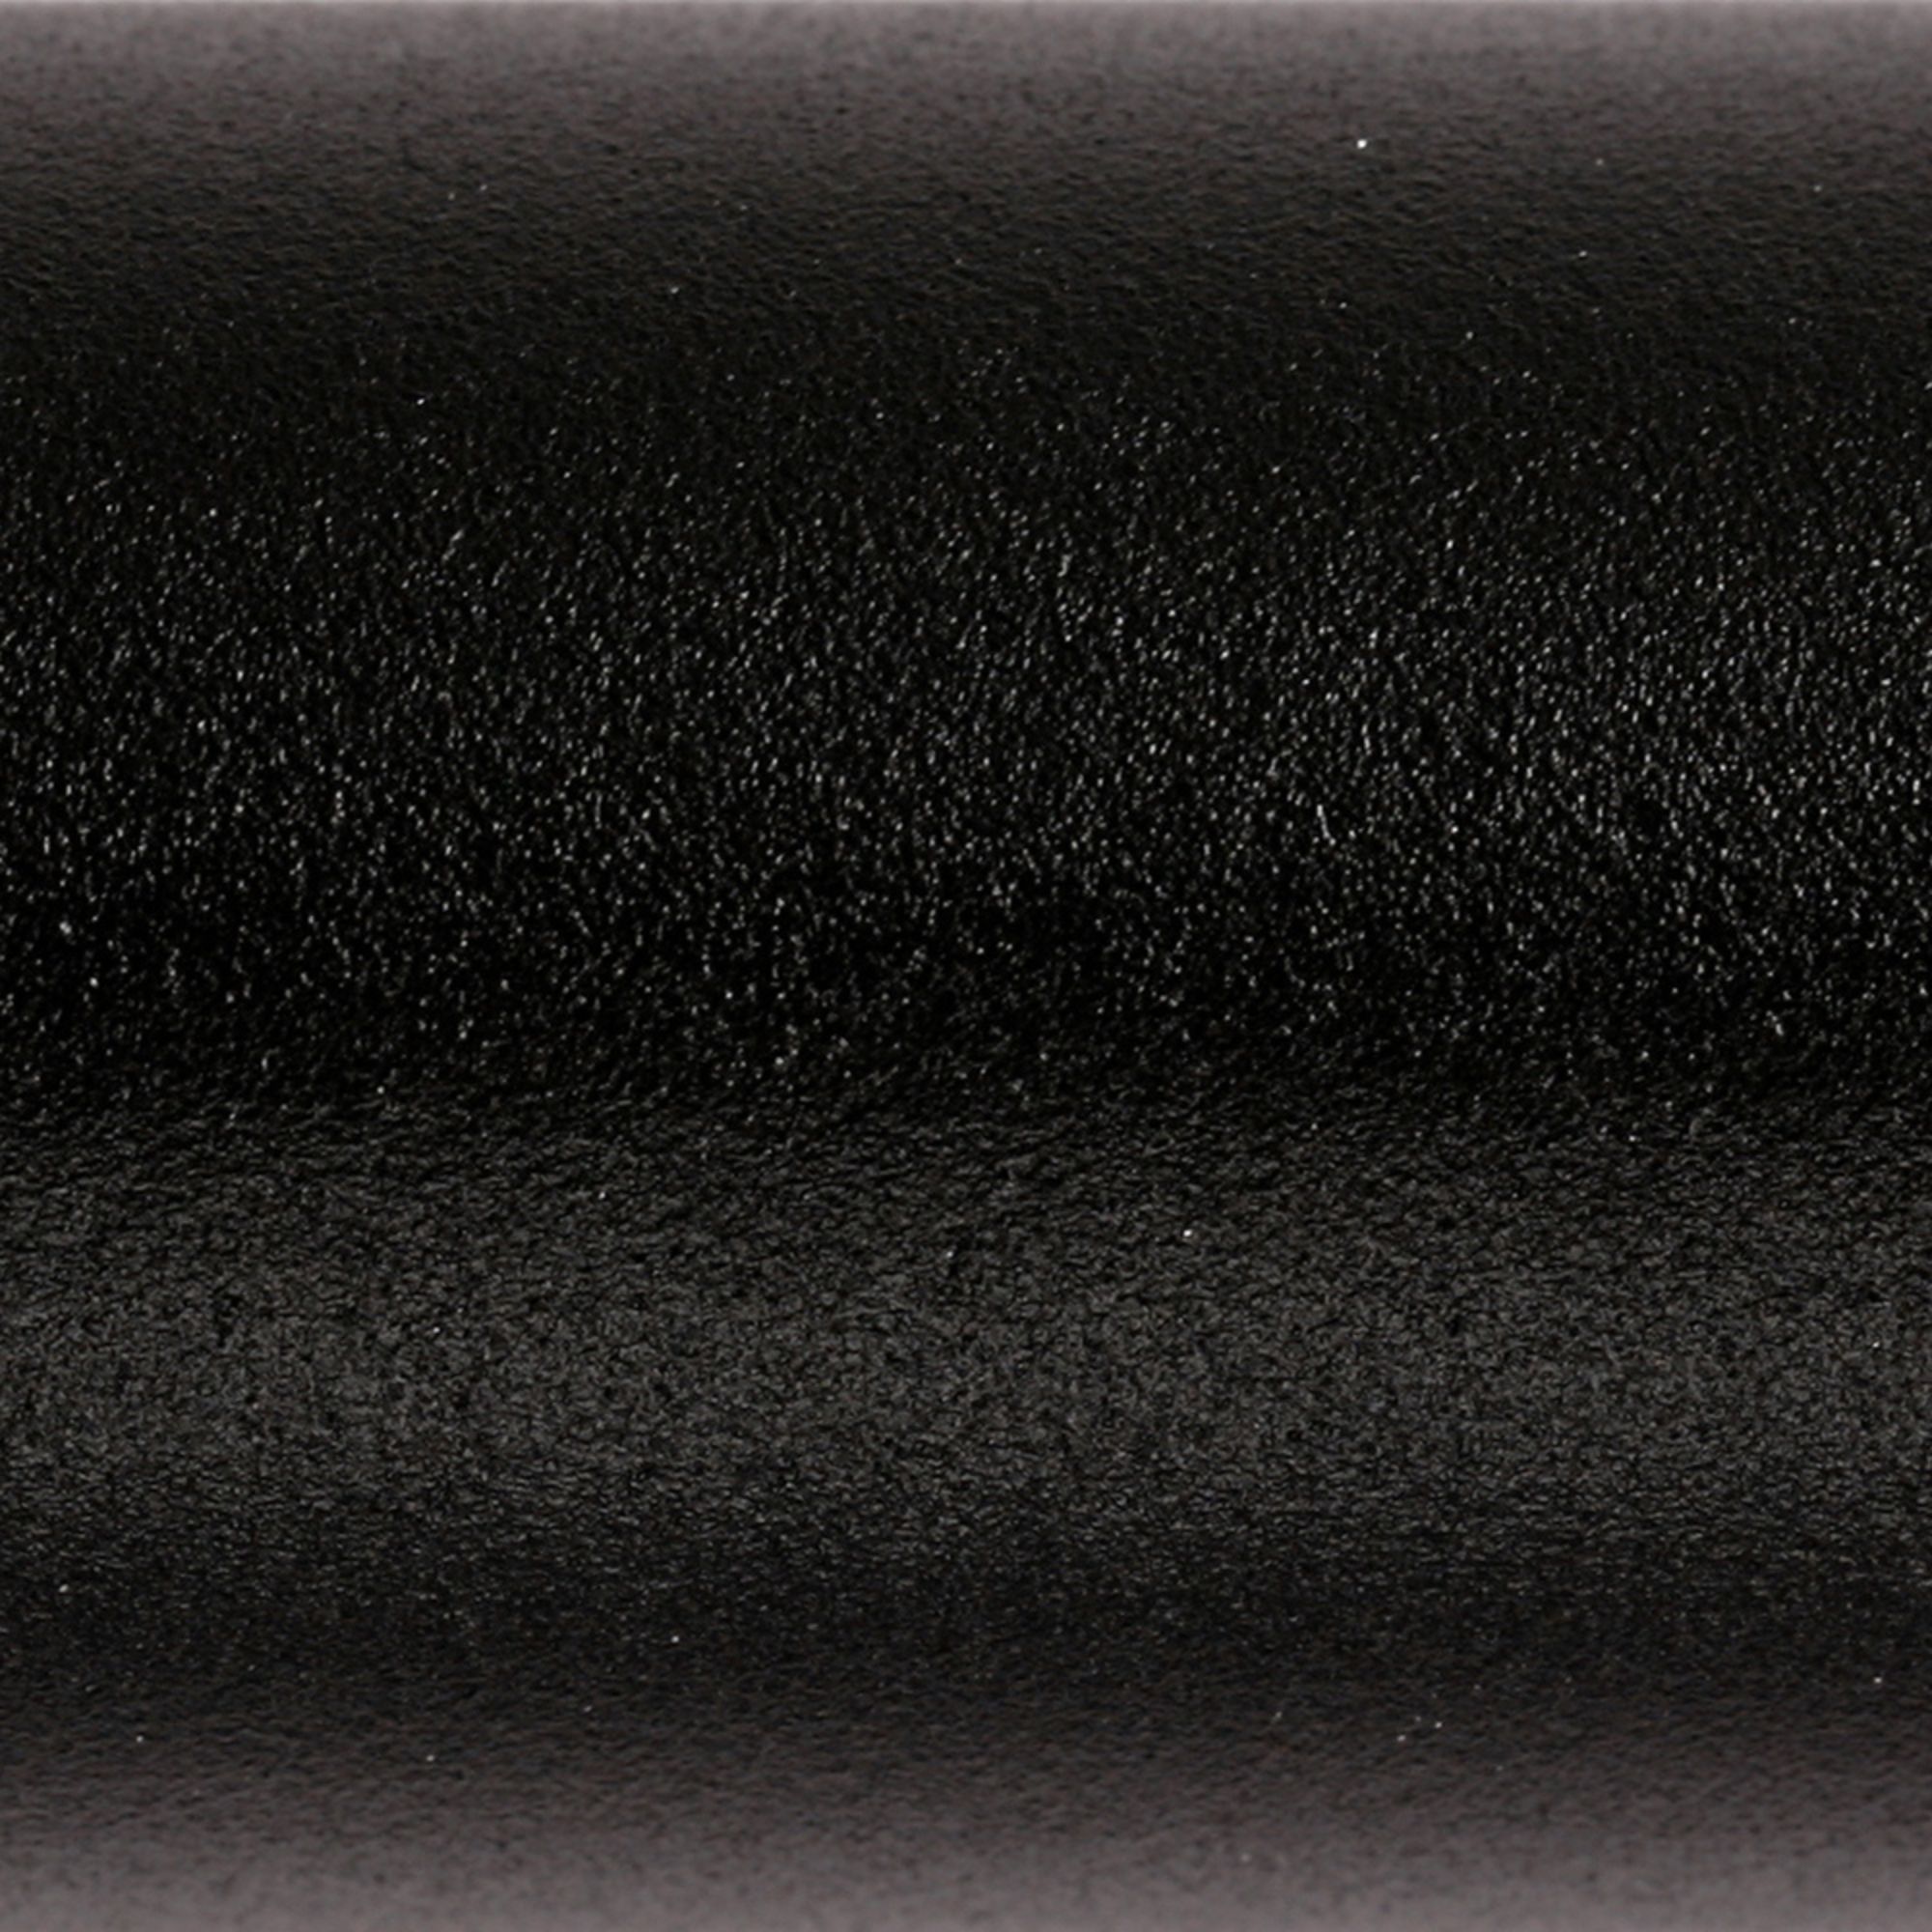 Terma Black Flat Towel warmer (W)500mm x (H)1080mm